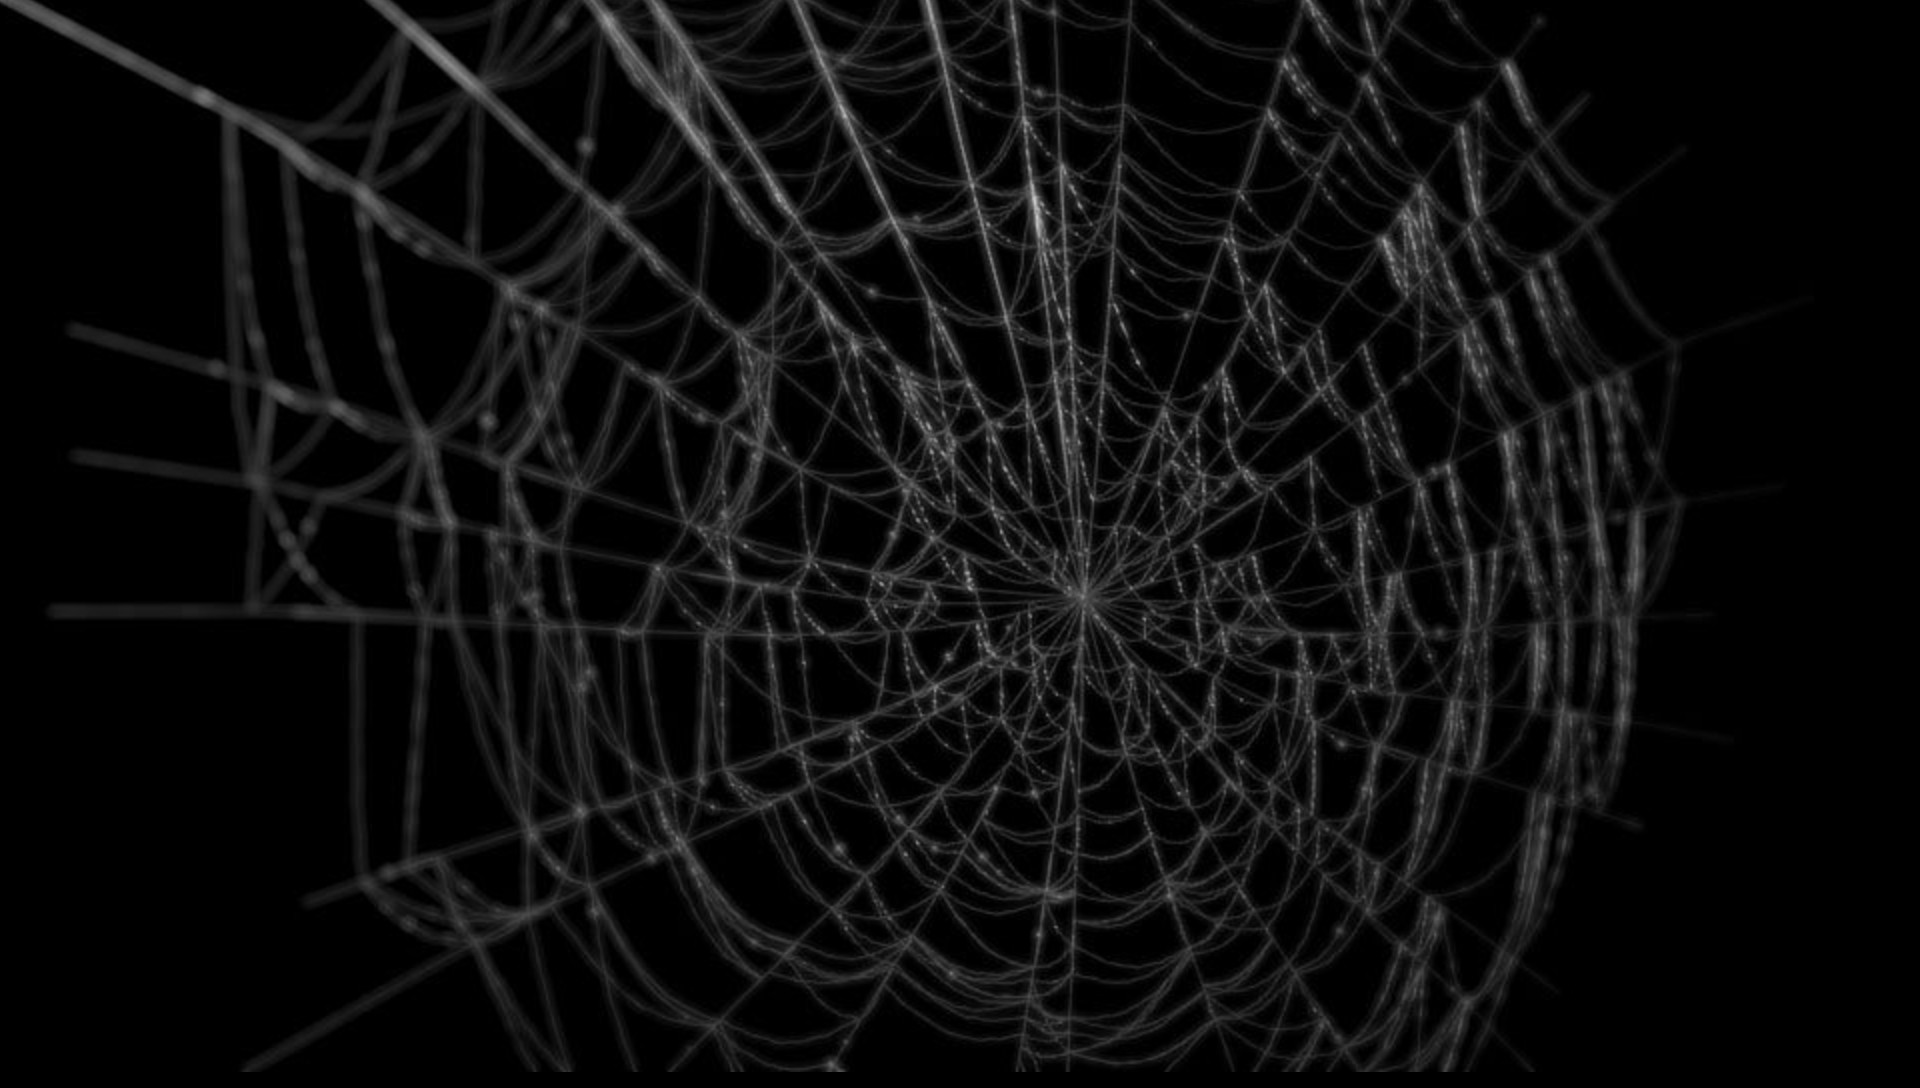 ArtStation - Procedural Spider Web, Ray Della Calce